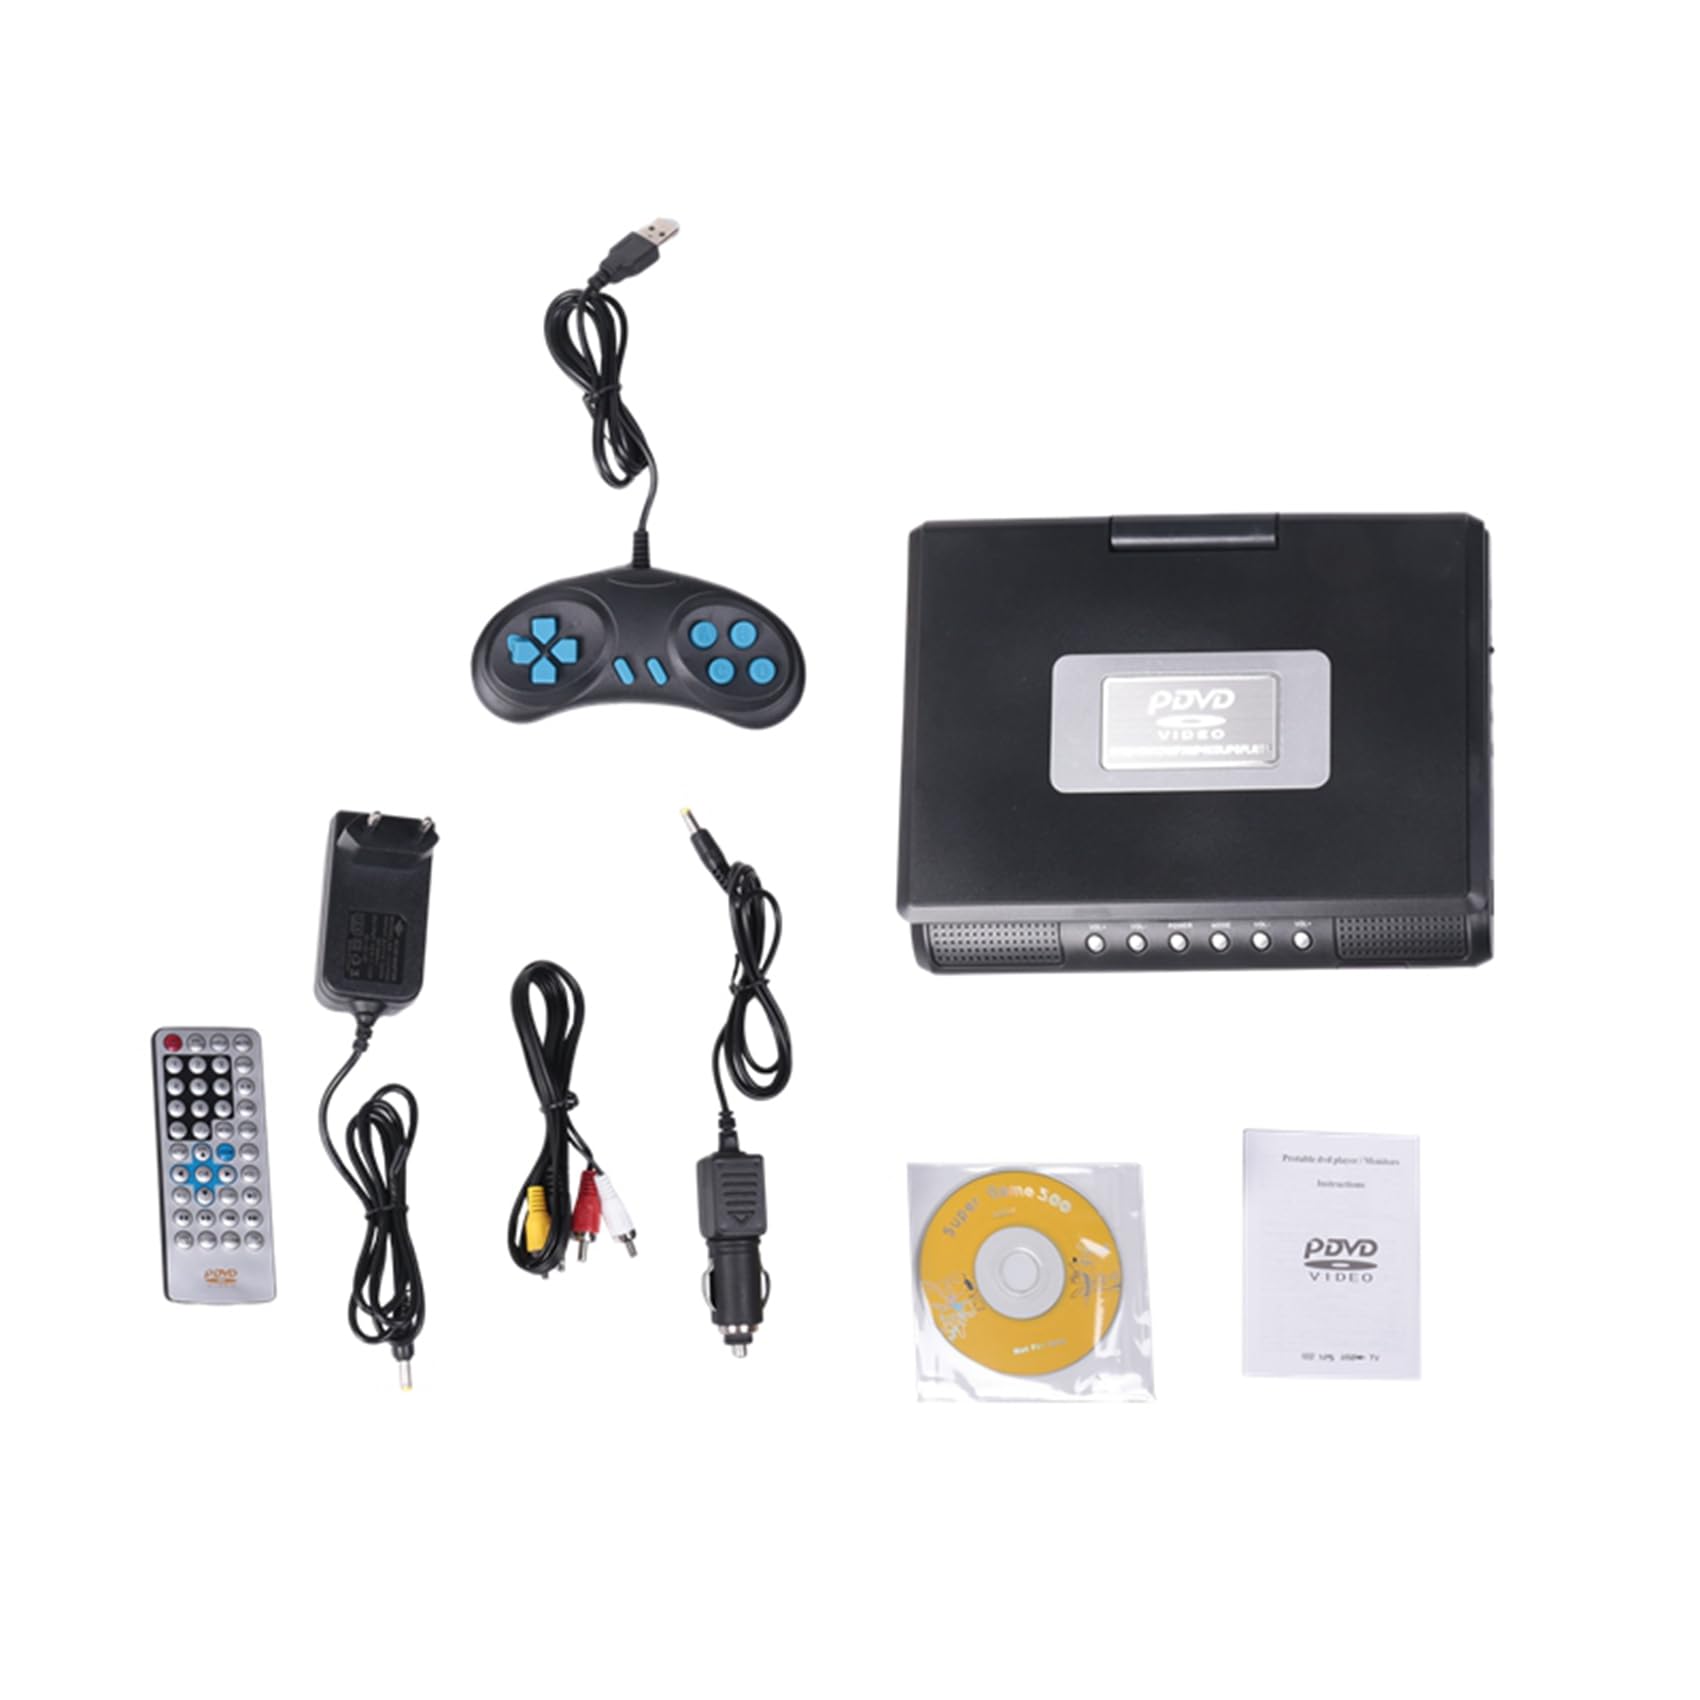 INTCHE DVD-Player 7,8-Multimedia-Digital-CD-Player 270-Grad-Drehbildschirm mit Fernbedienung, EU-Stecker